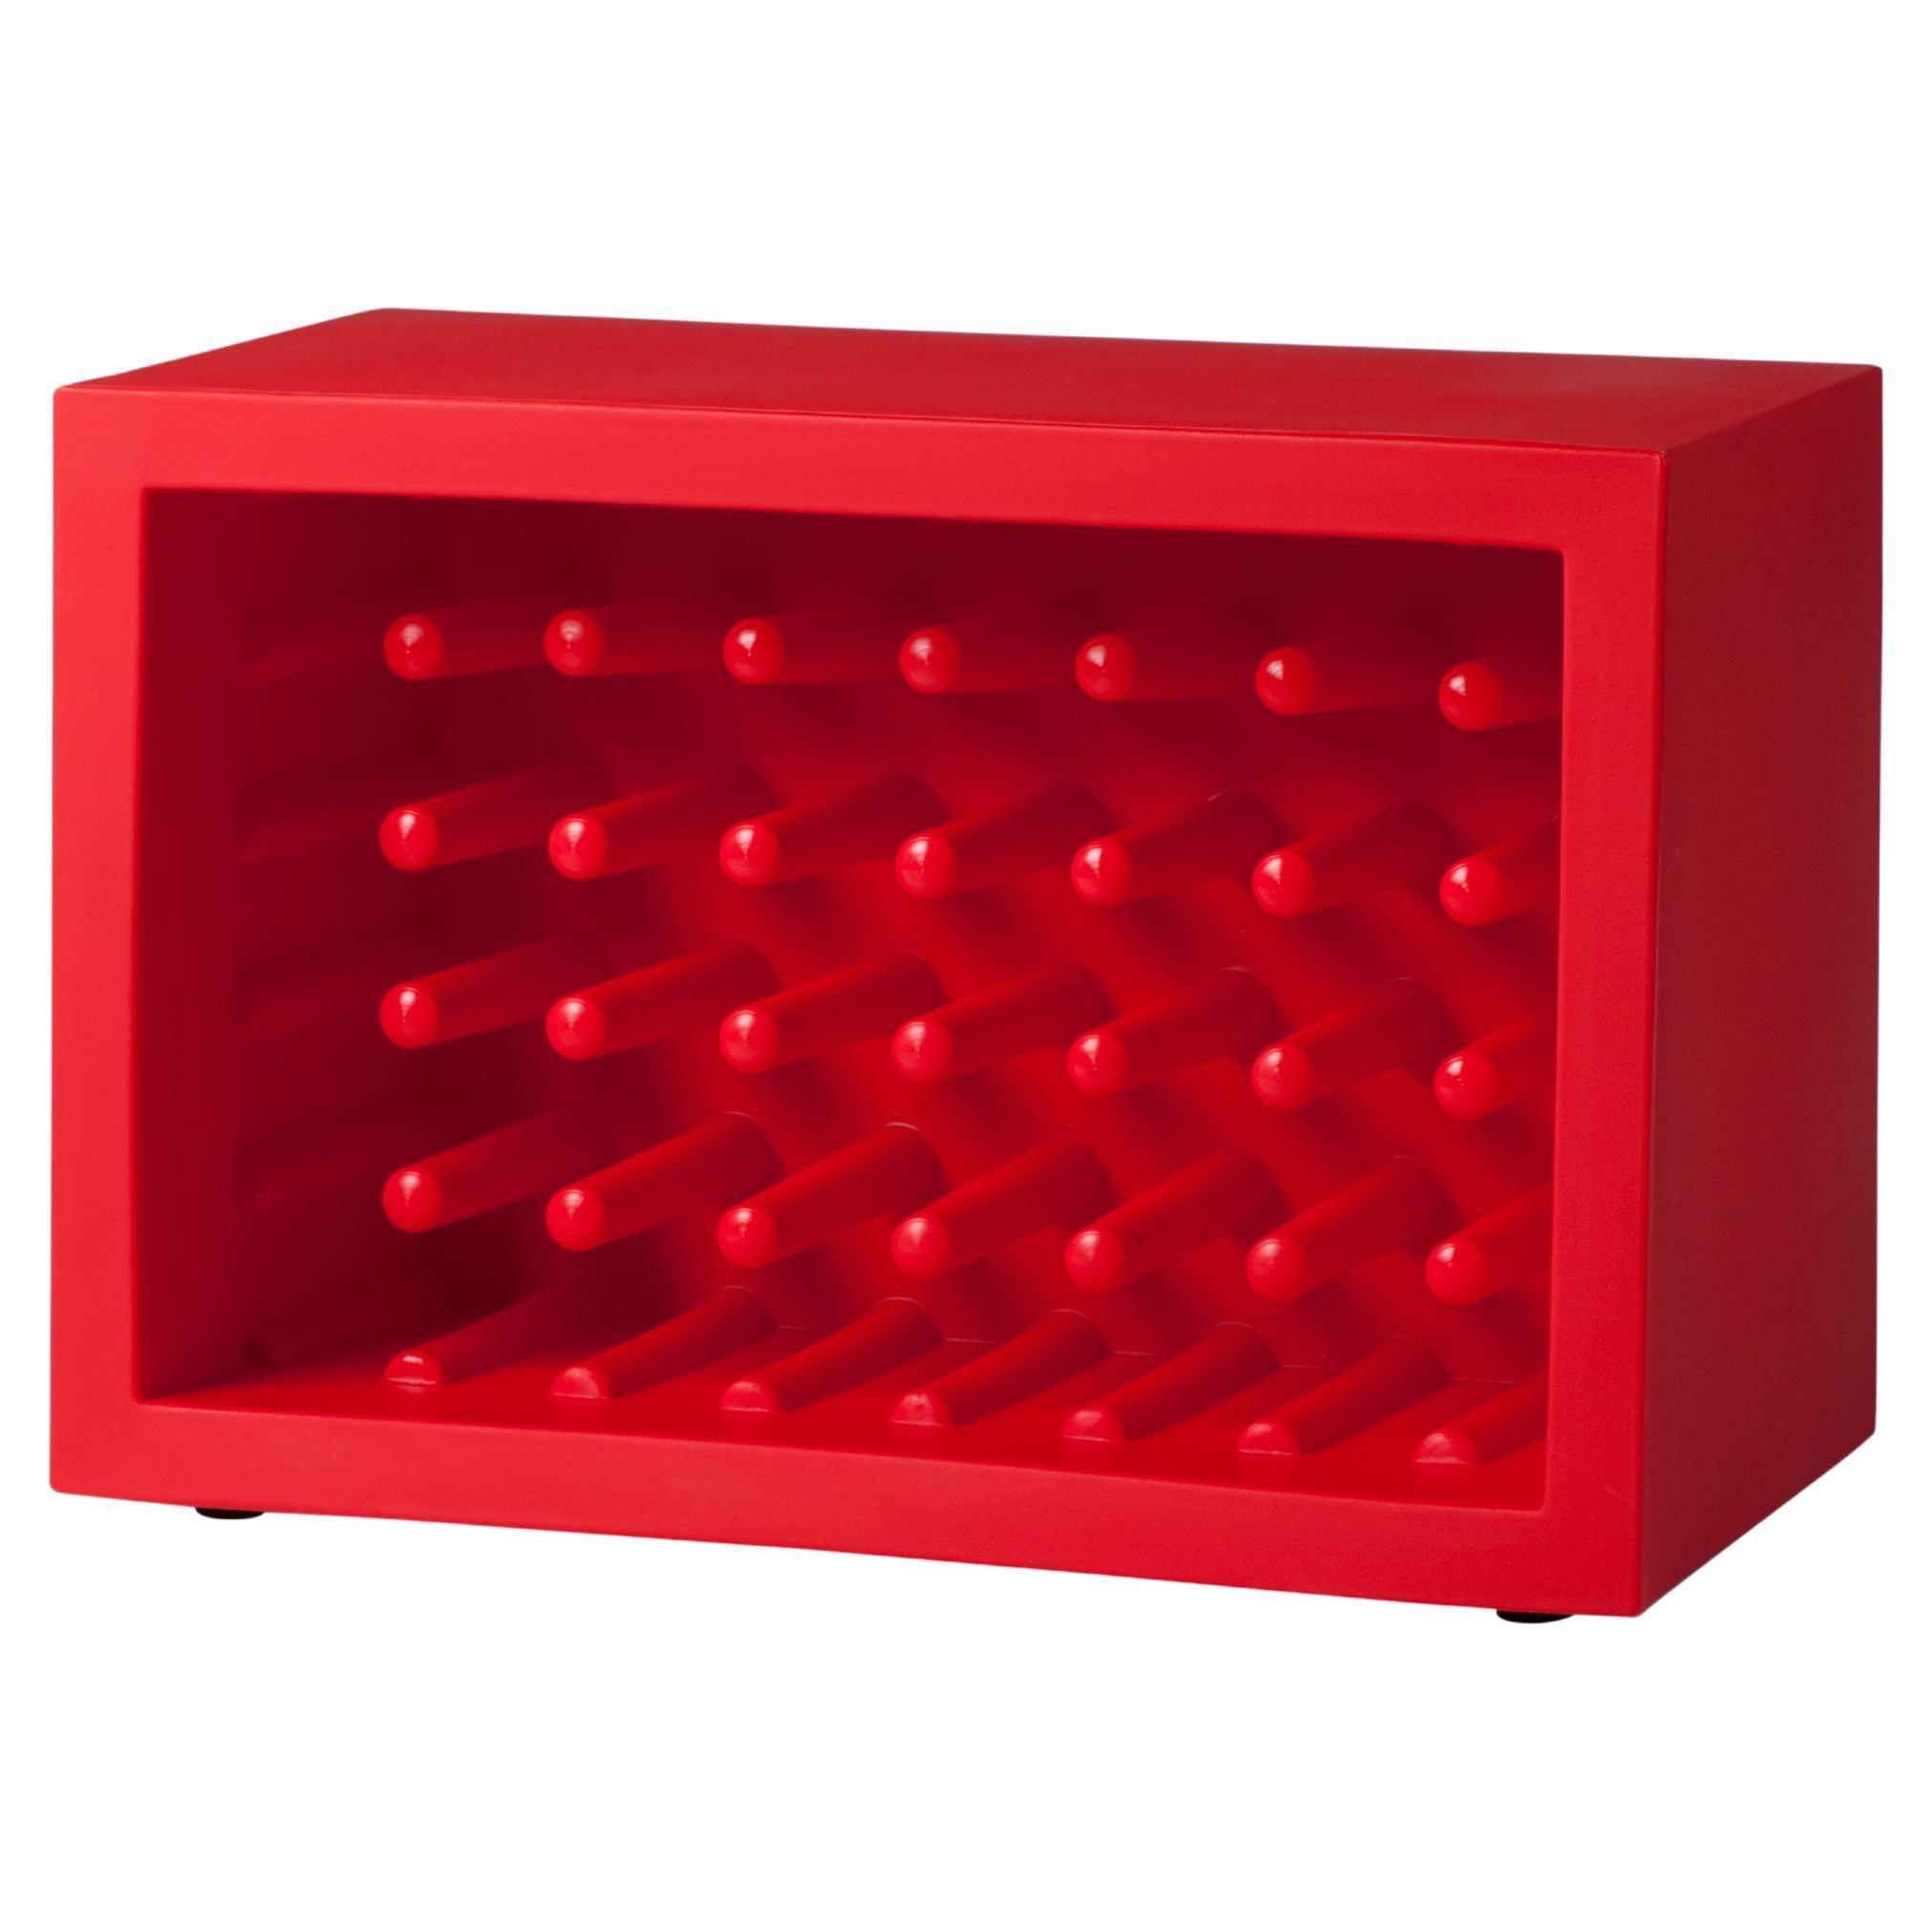 Porte-bouteilles Bachus Slide Design rouge flamme de Marcel Wanders